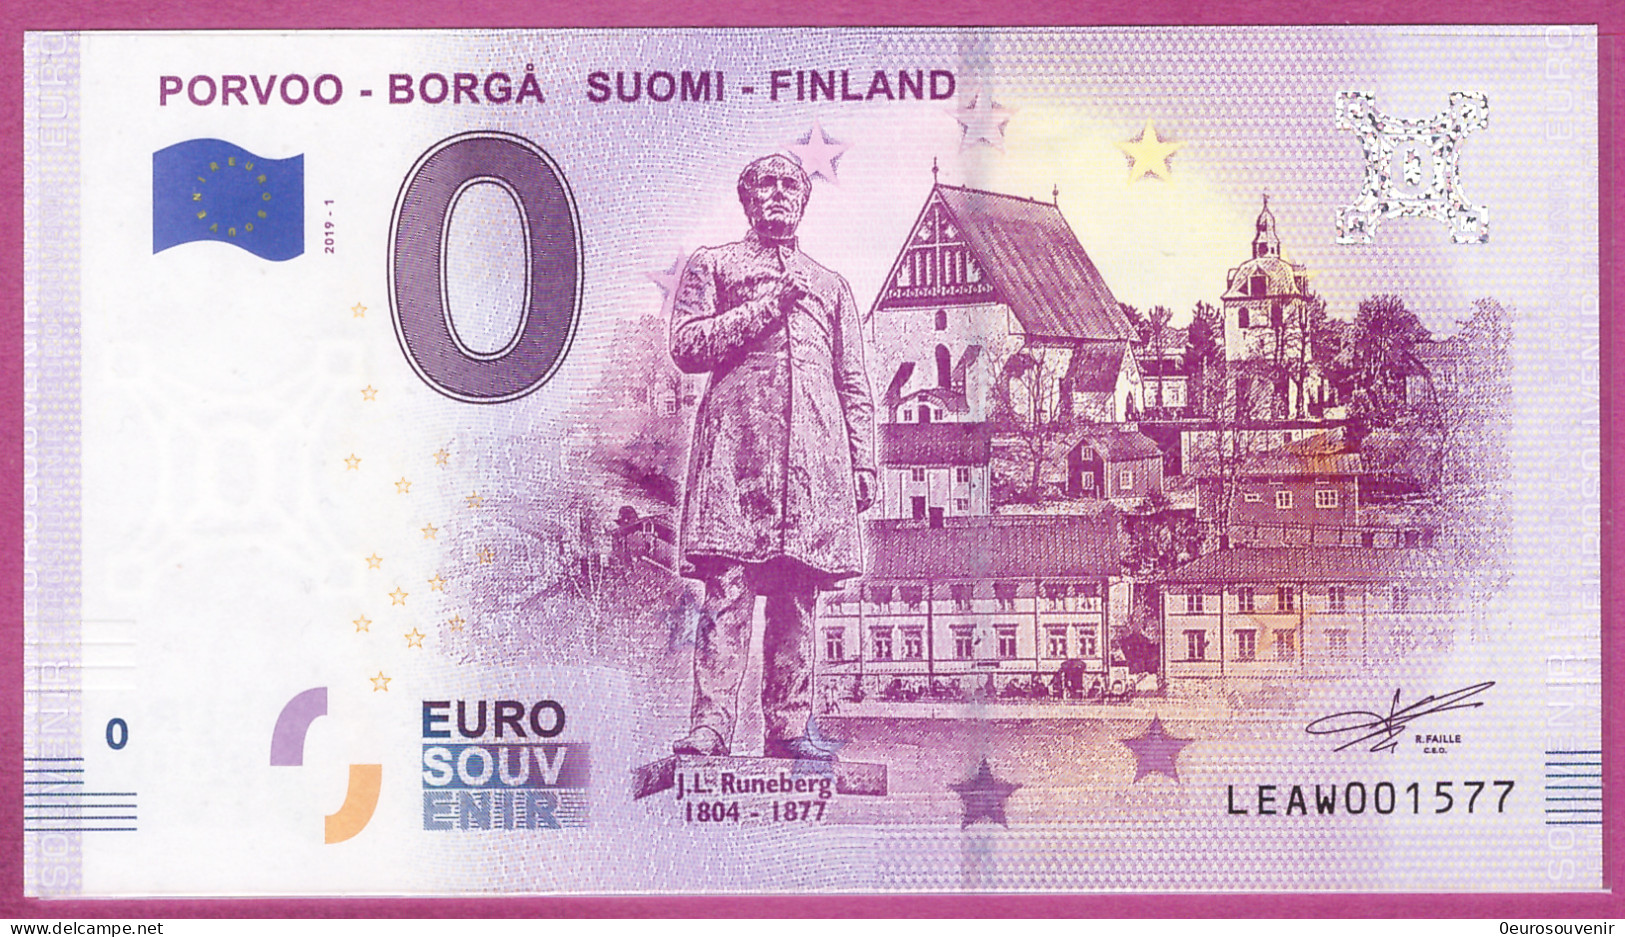 0-Euro LEAW 2019-1 PORVOO - BORGA SUOMI-FINLAND - RUNEBERG - Privatentwürfe